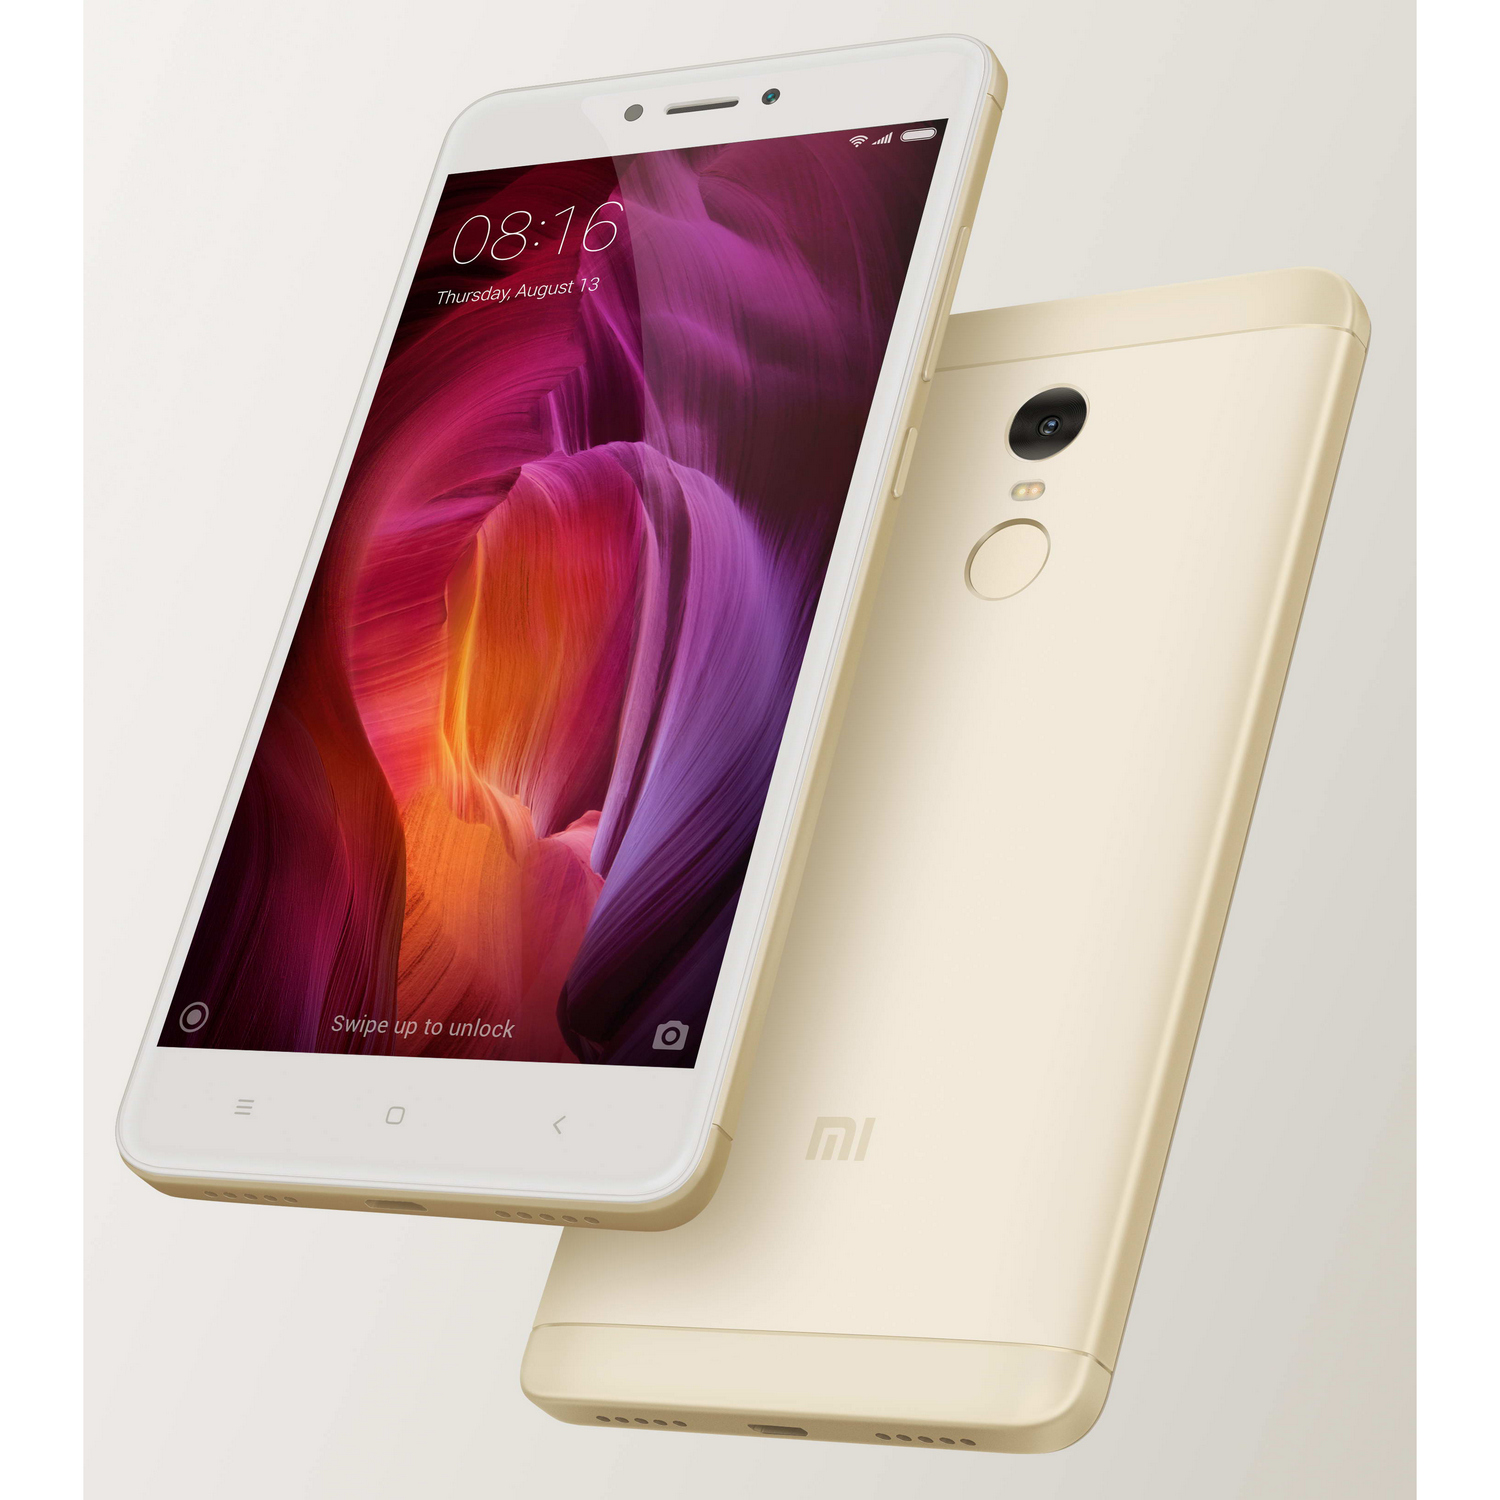 Smartphone Xiaomi Redmi Note 4 32 gb - Celulares - dourado  - Central - unidade            Cod. note4